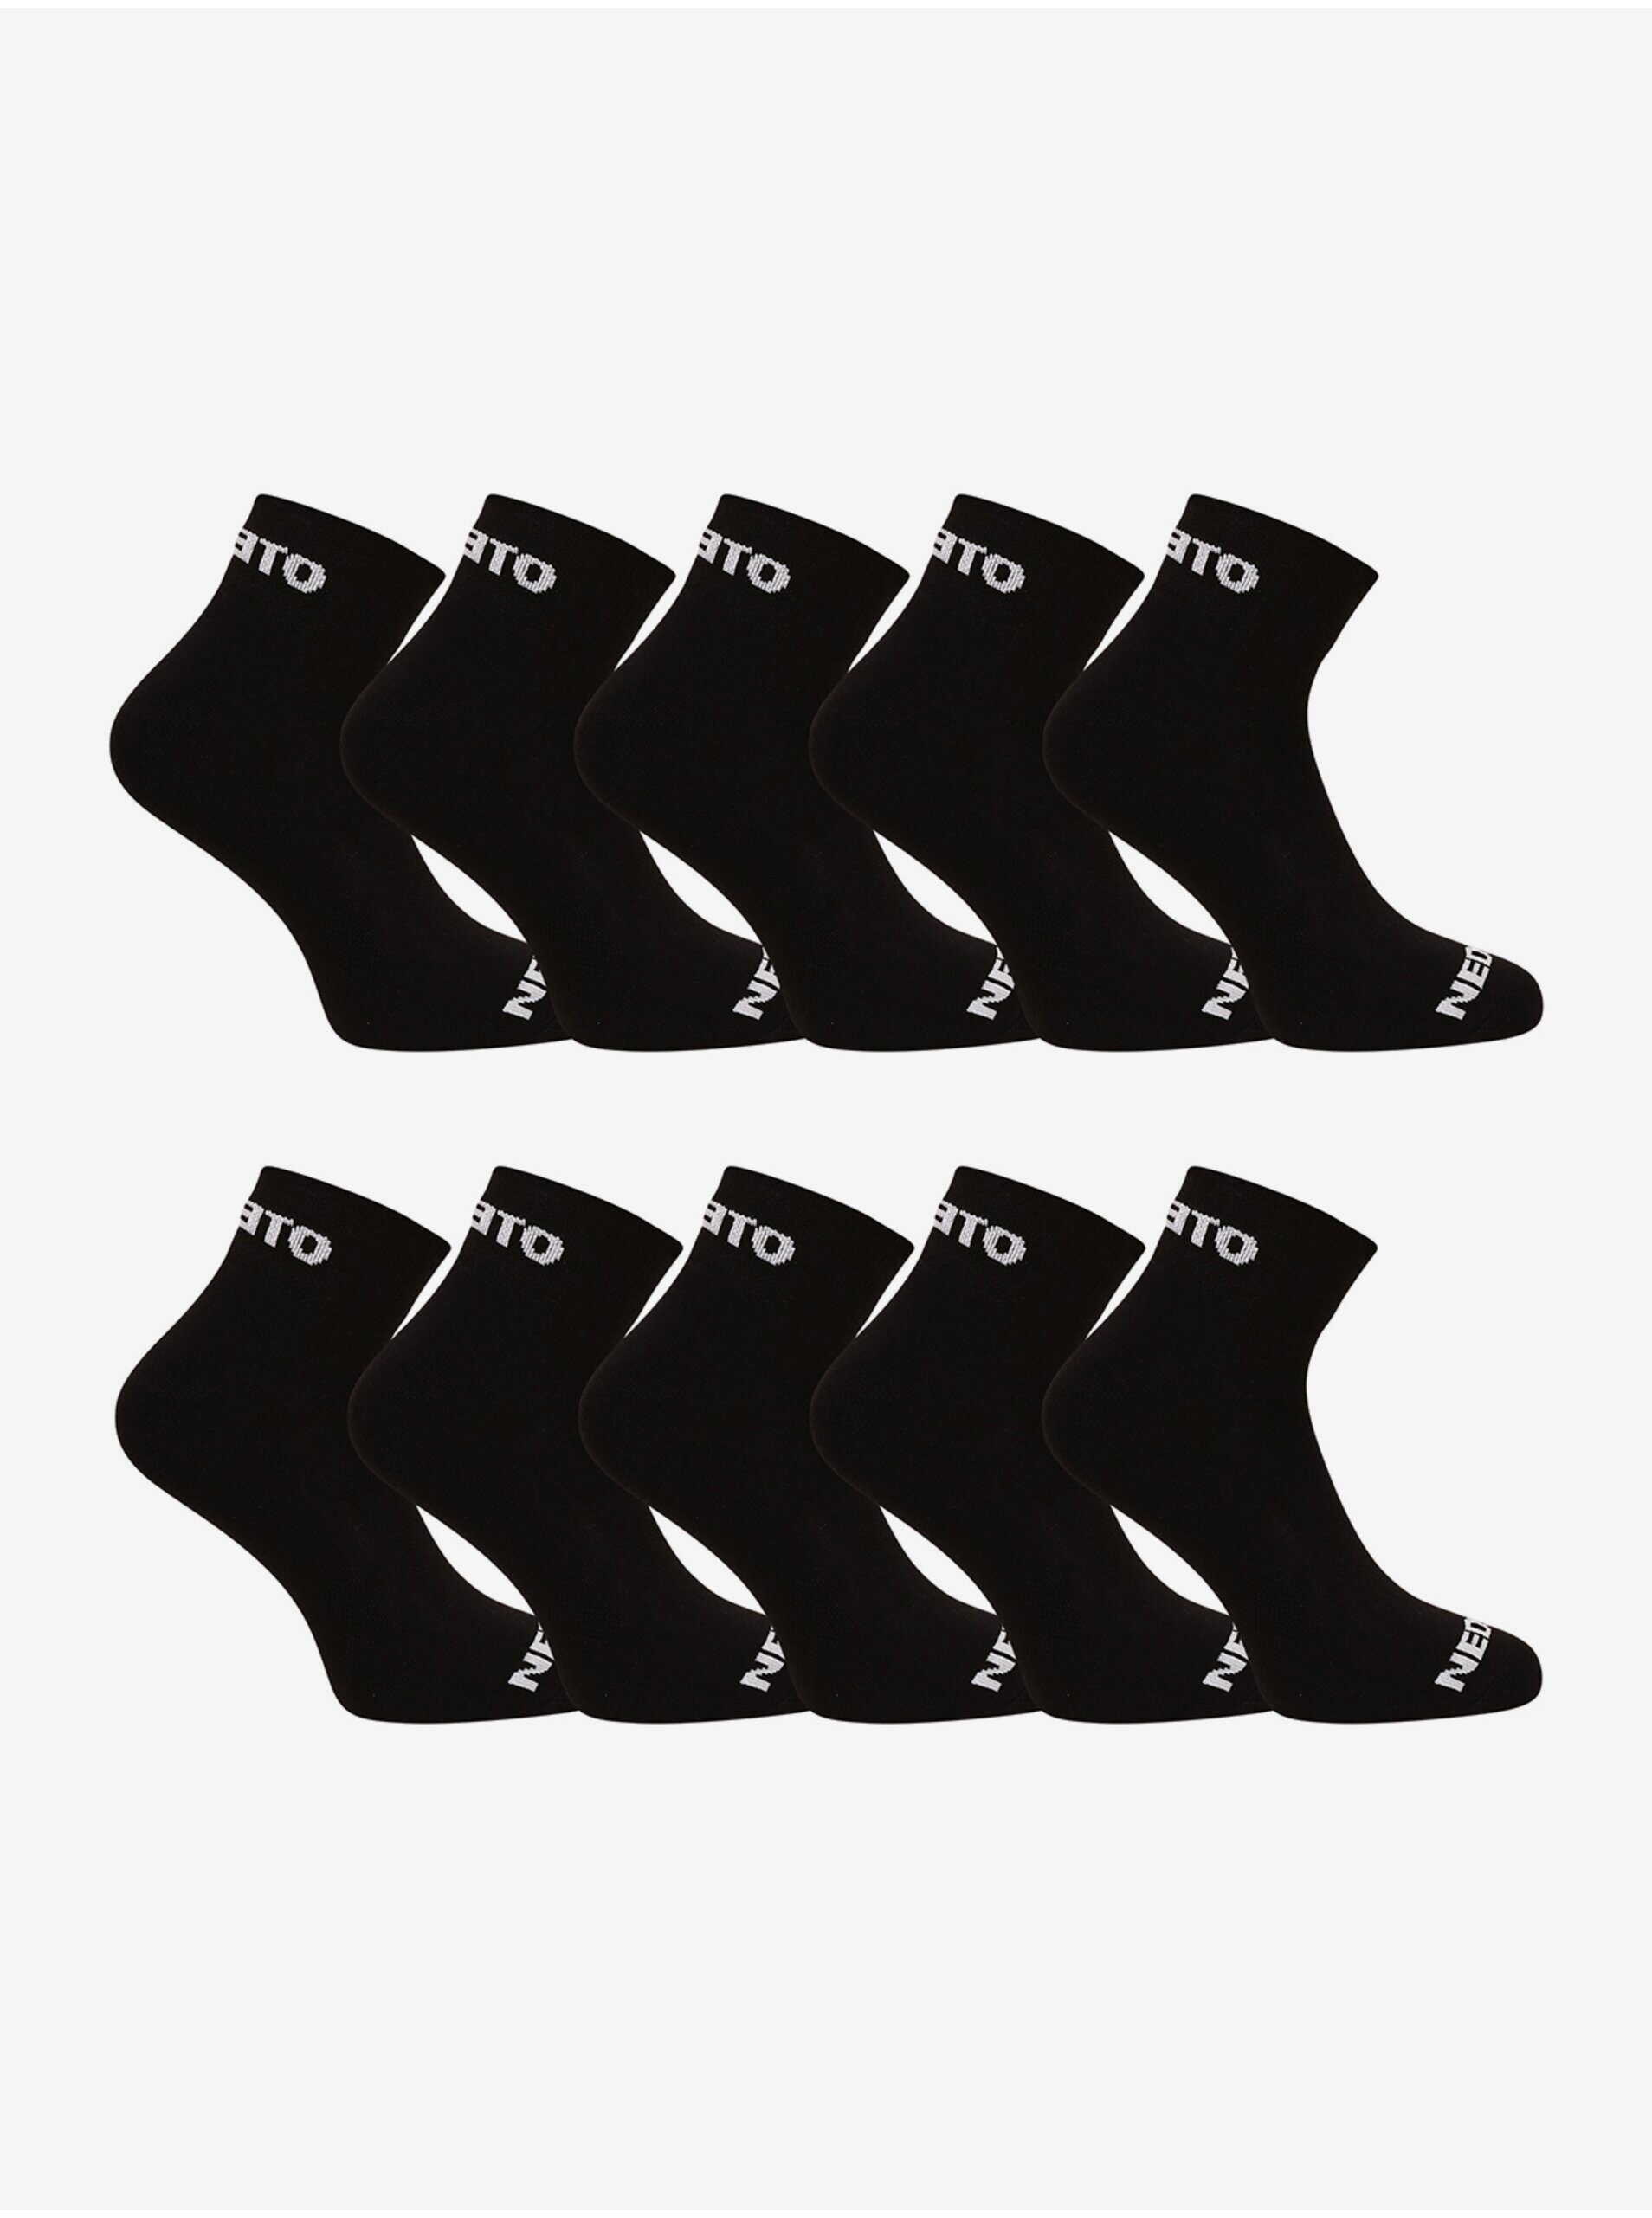 E-shop Sada deseti párů ponožek v černé barvě Nedeto